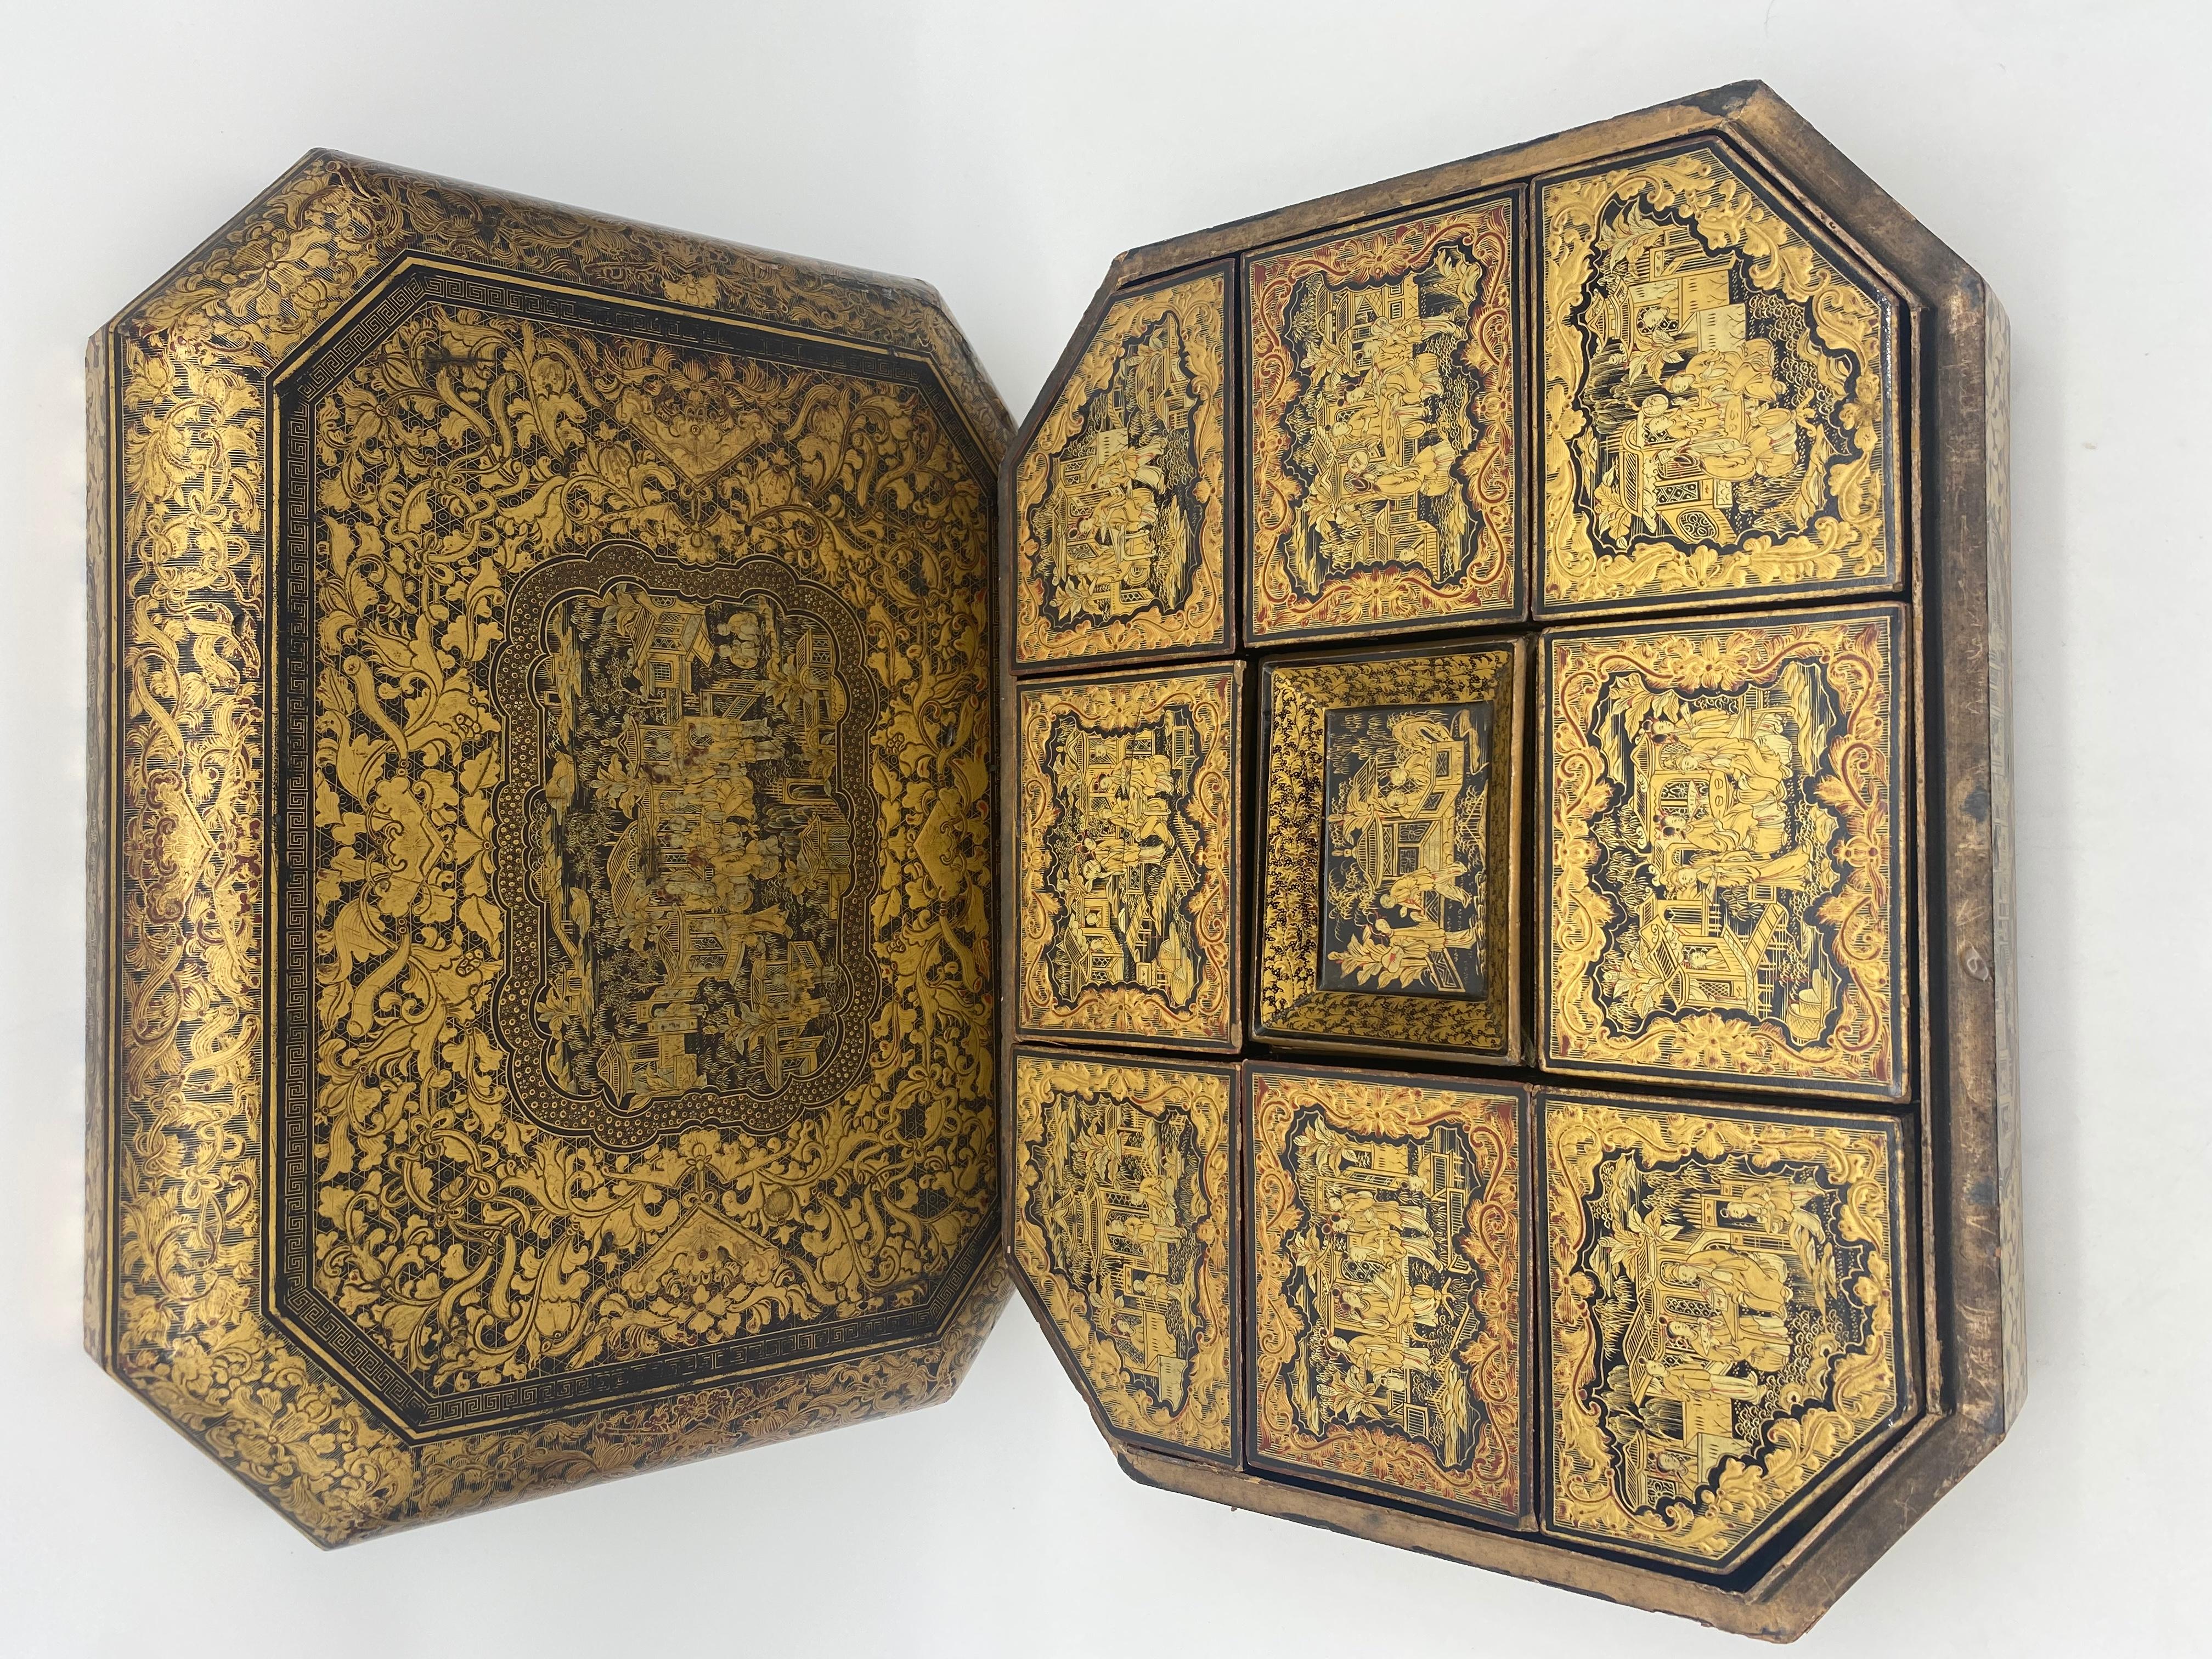 Antike 19. Jahrhundert Export chinesische Lack-Spiel-Box mit handgemalten Szenen vergoldet Export schwarzem Lack, gibt es 8 Spiel-Boxen und 6 Tabletts, sehr detaillierte chinesische vergoldete Chinoiserie-Lack-Fach-Box, hebt der Deckel ab und die